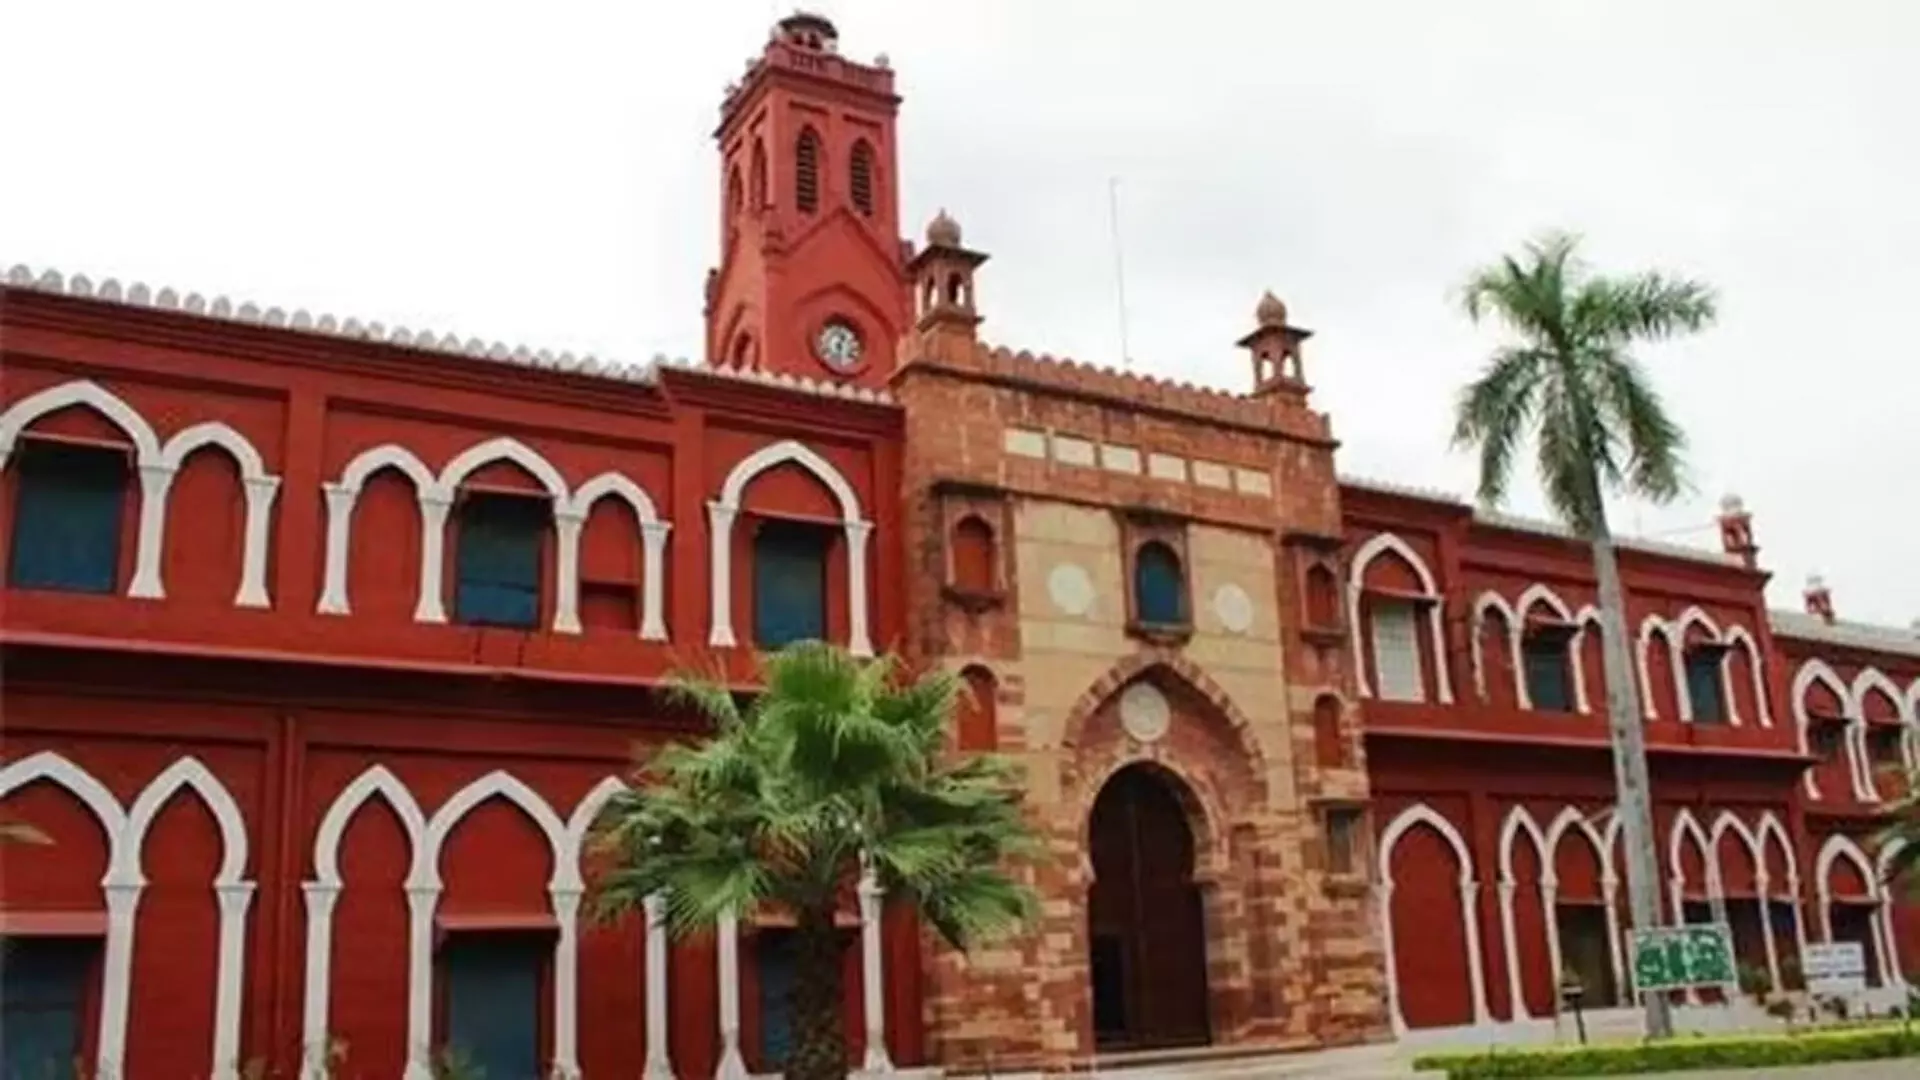 Aligarh मुस्लिम विश्वविद्यालय के छात्रावास खाली करने के आदेश पर PhD छात्रों की तीखी प्रतिक्रिया